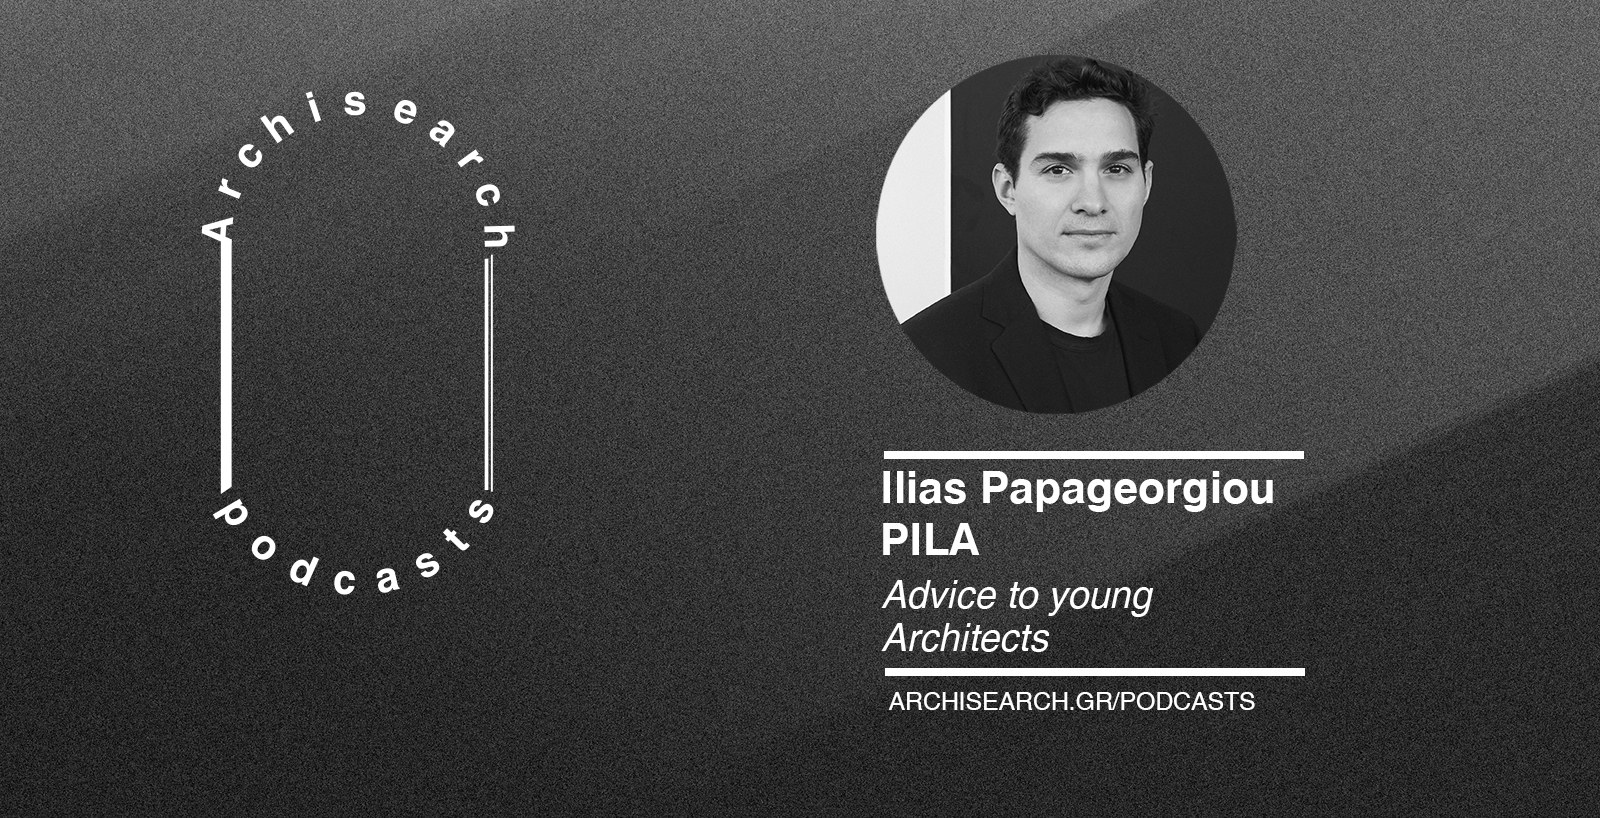 Archisearch Archisearch Talks | Ilias Papageorgiou - Podcast Recap